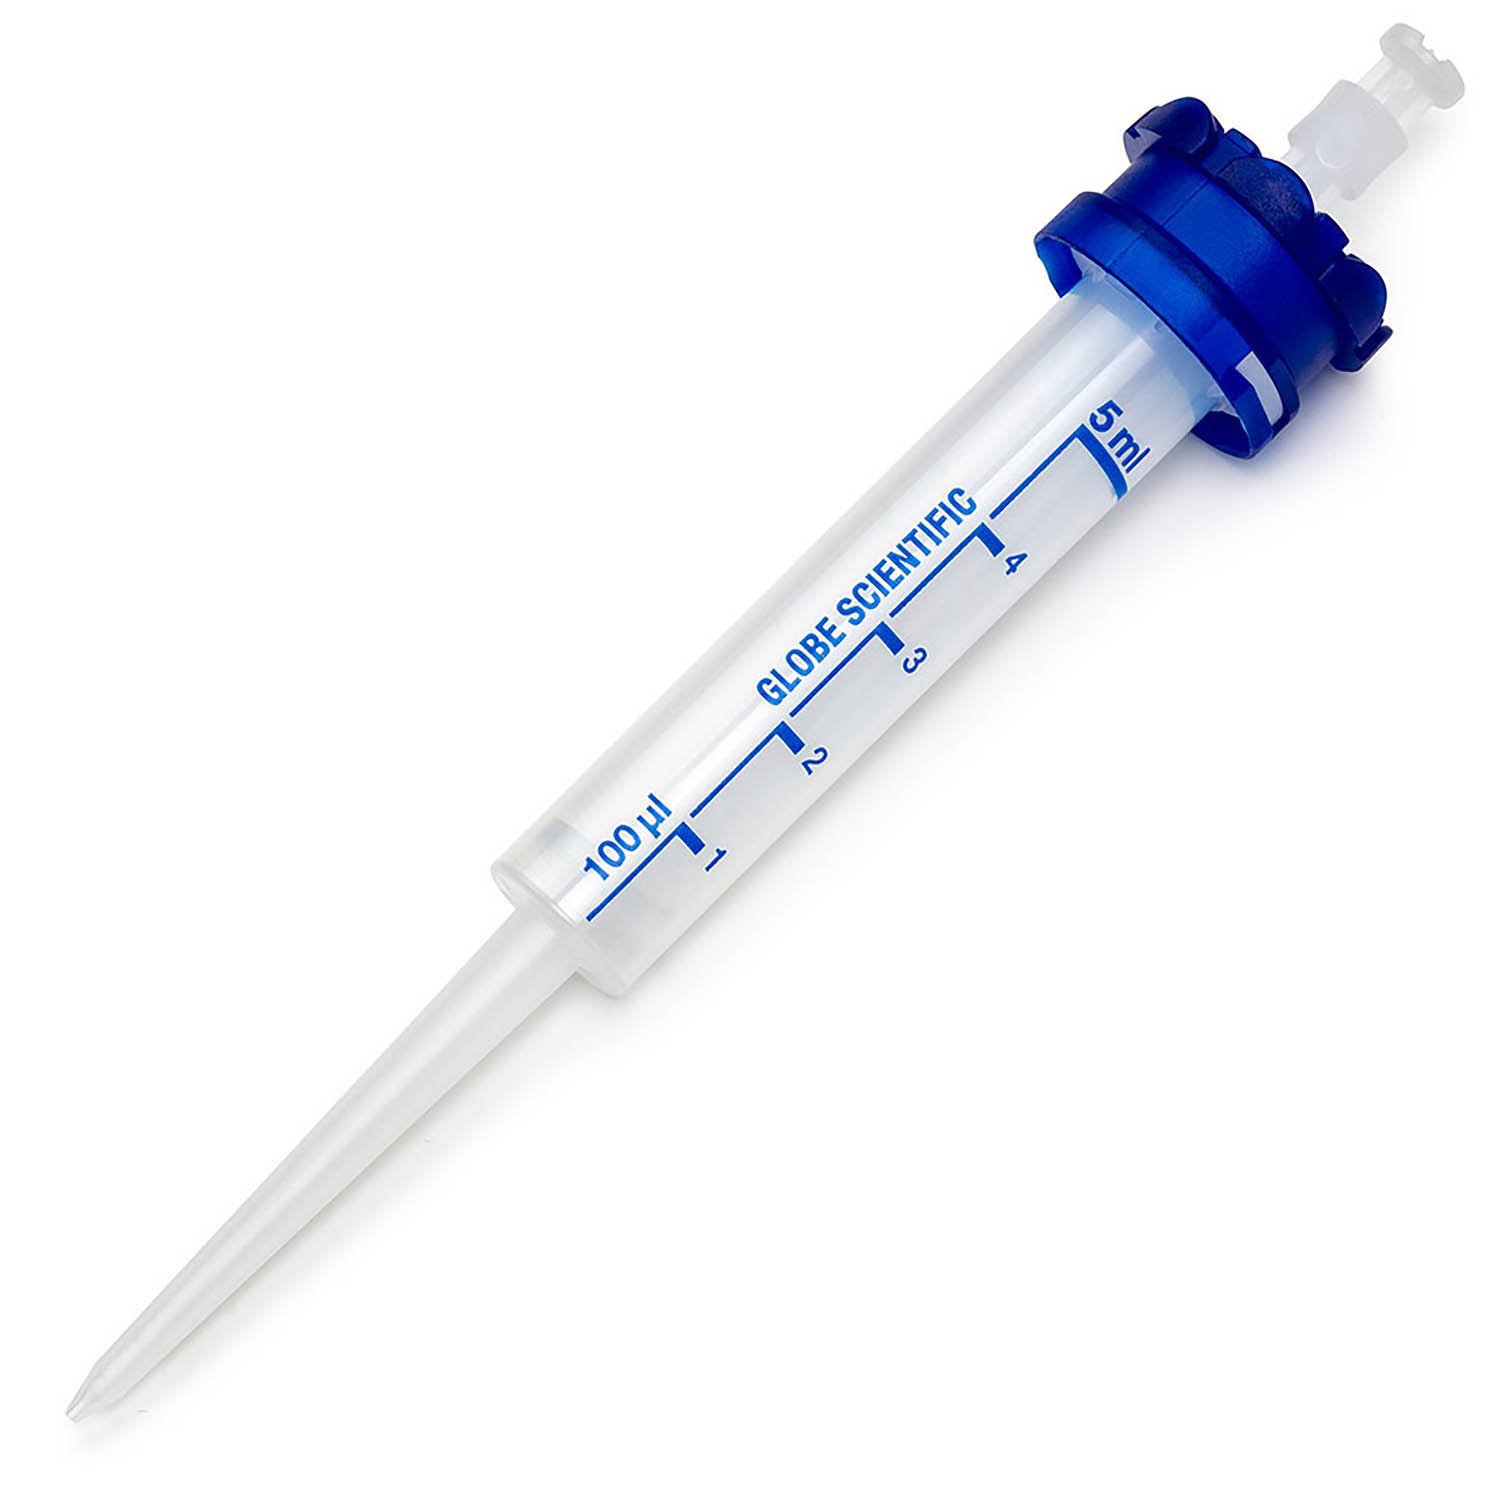 RV-Pette PRO Dispenser Syringe Tip for Repeat Volume Pipettors - Sterile, 5mL, Box of 100